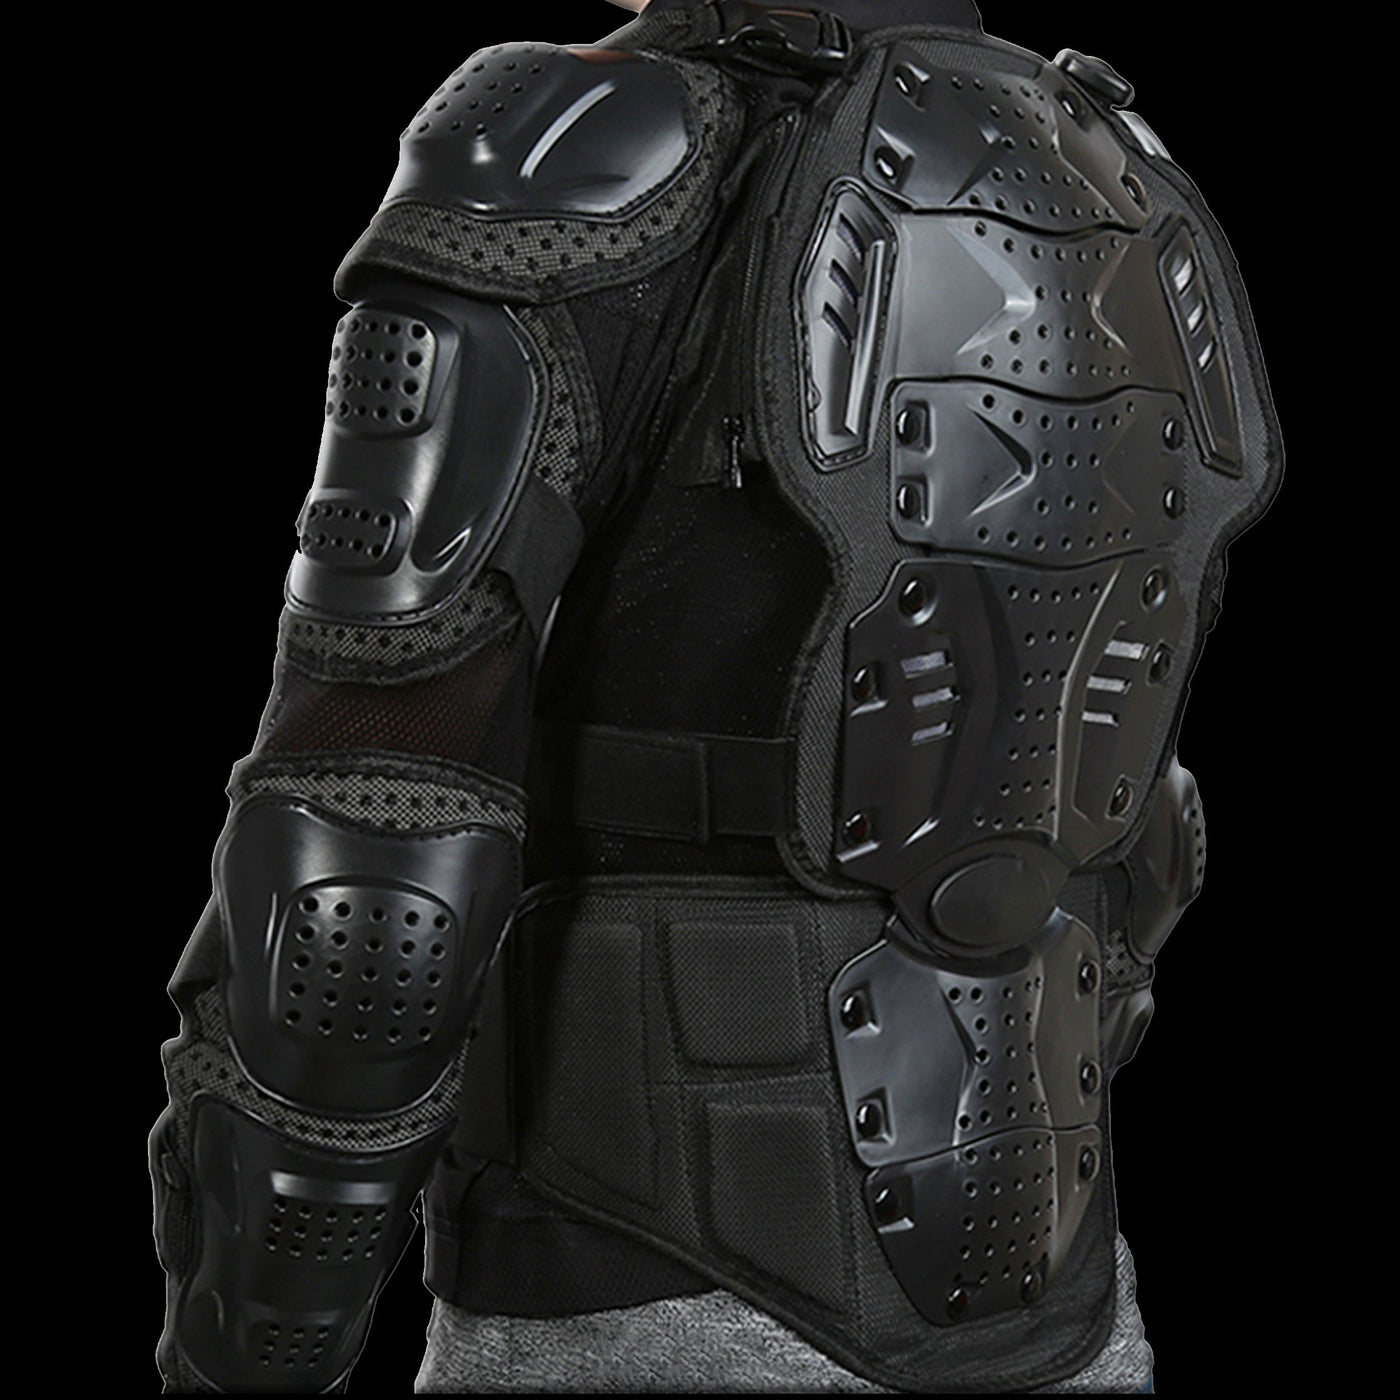 Body Armor Jacket